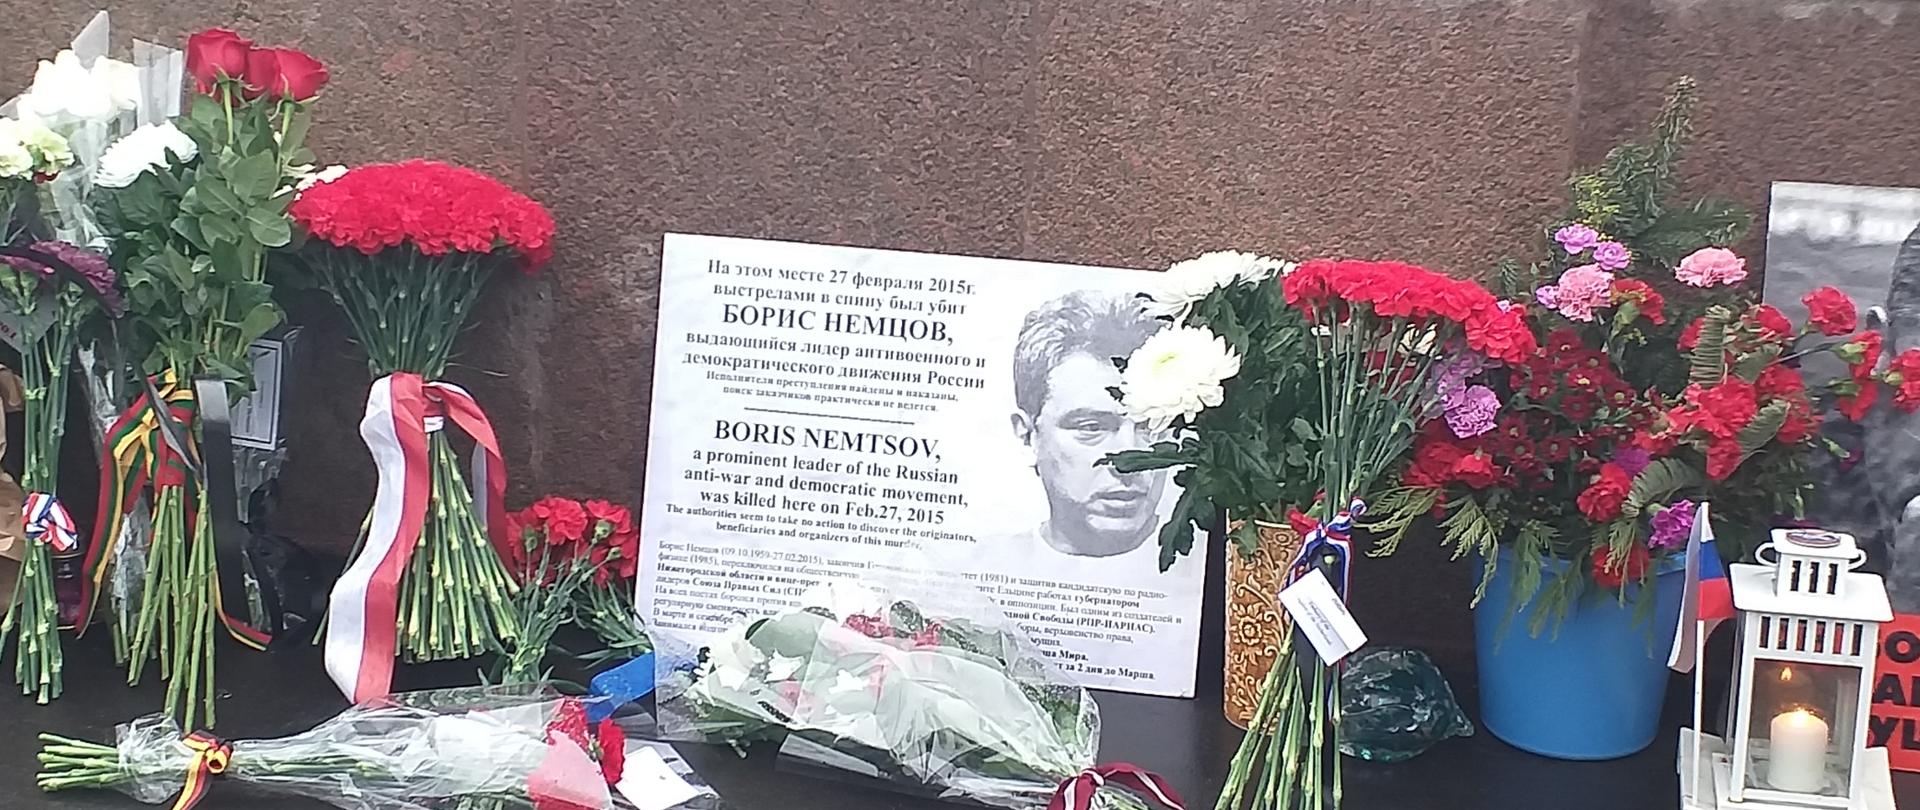 Пятая годовщина со дня смерти Бориса Немцова